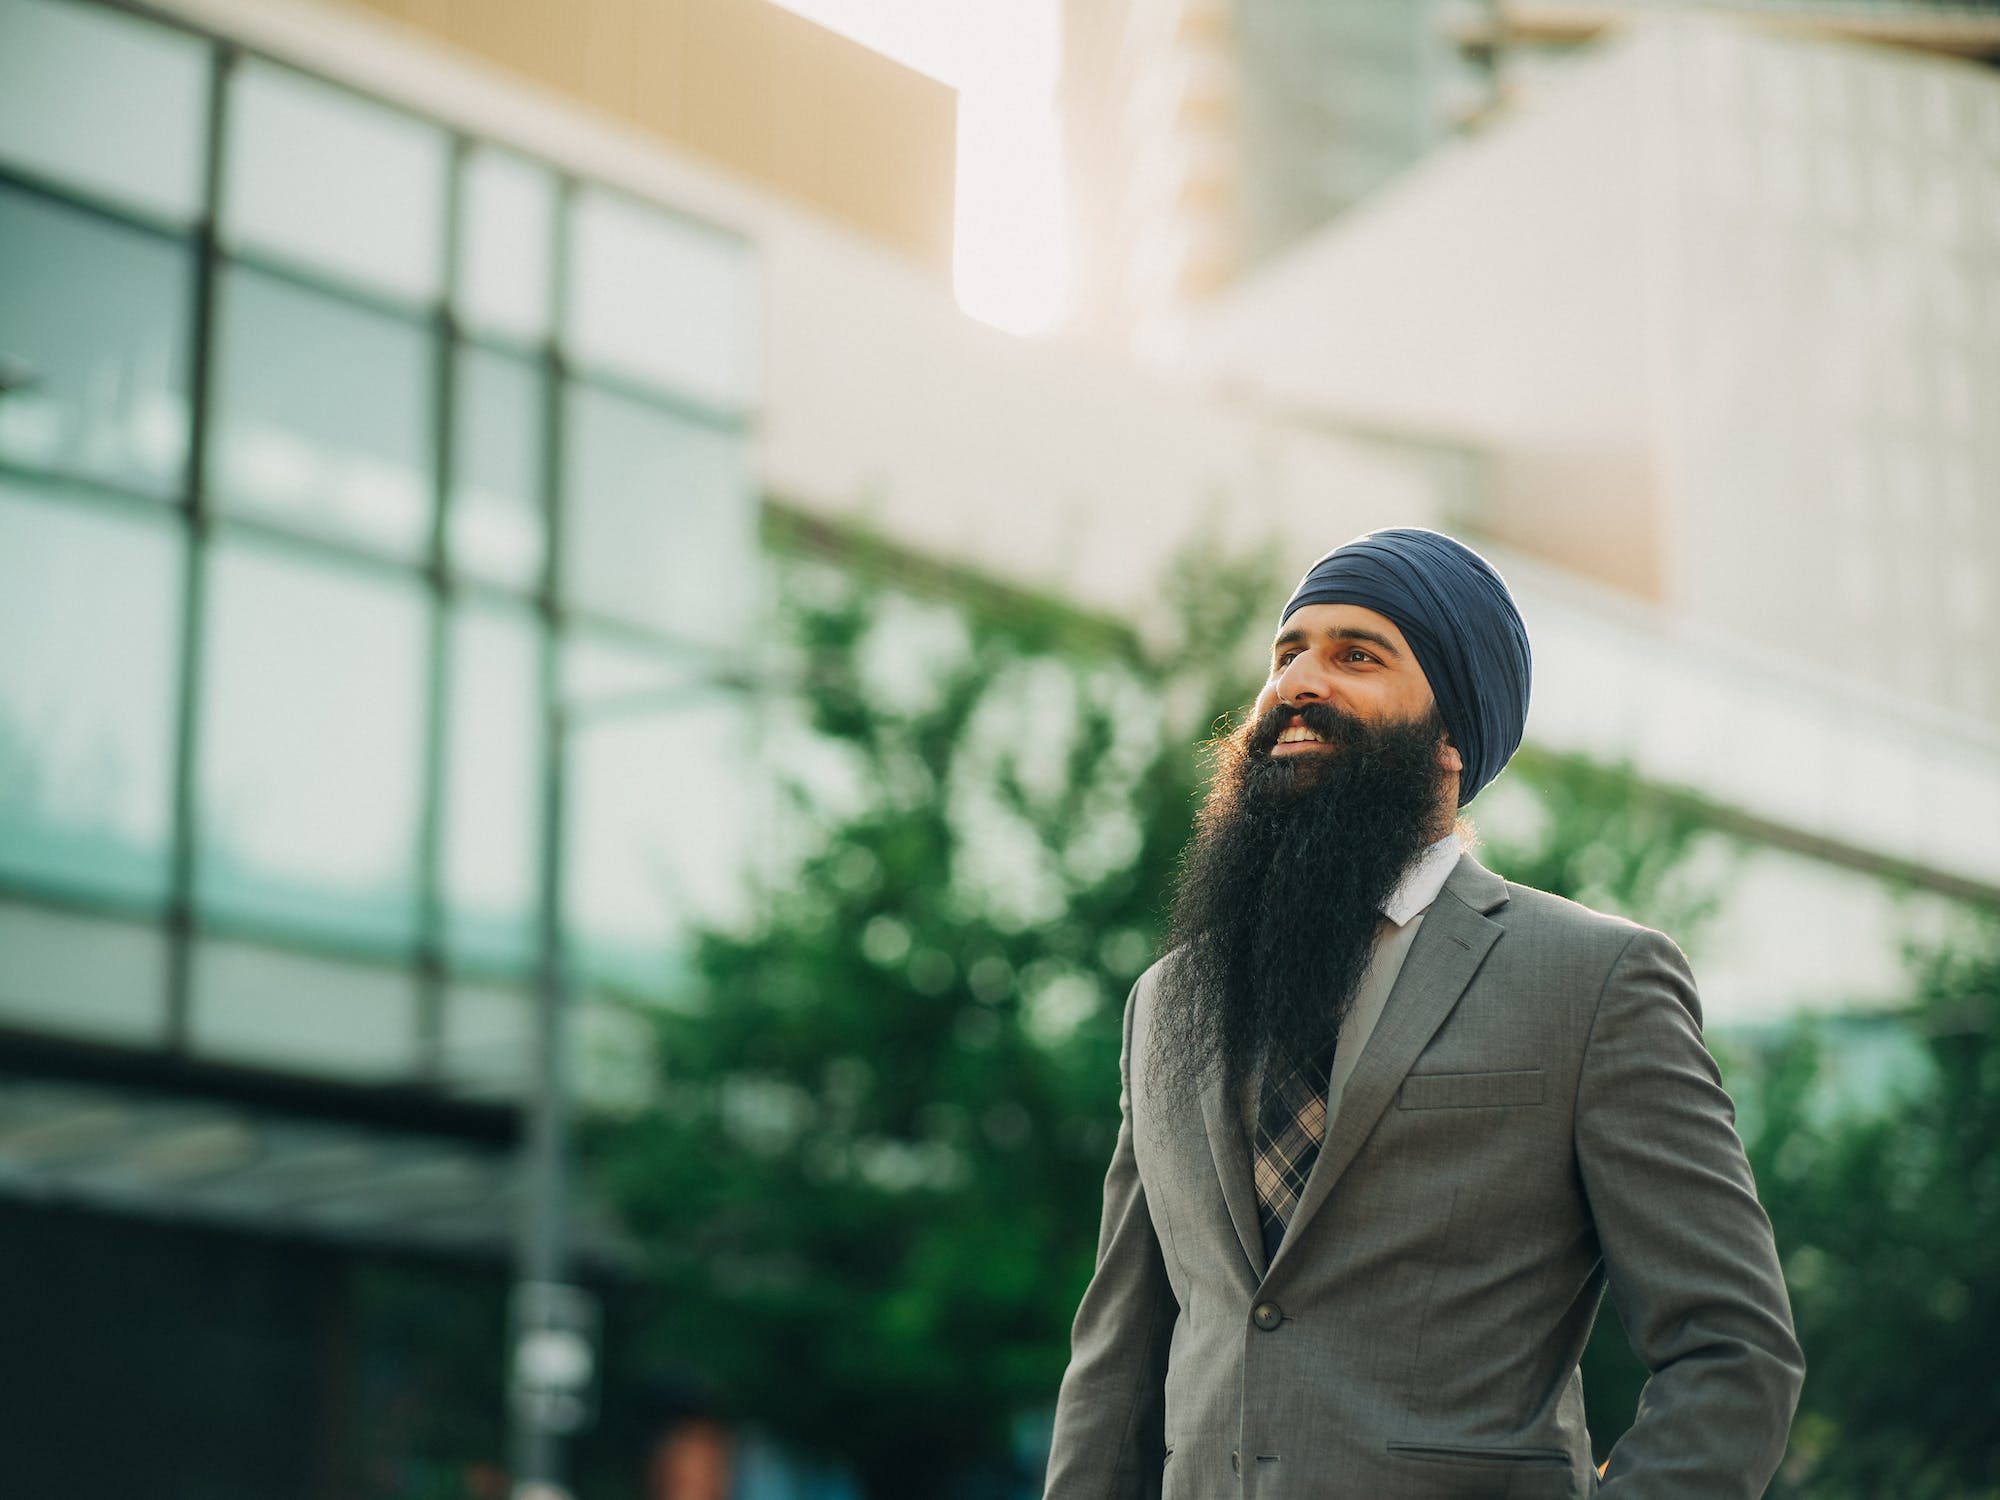 Sikh man in a suit on a crosswalk